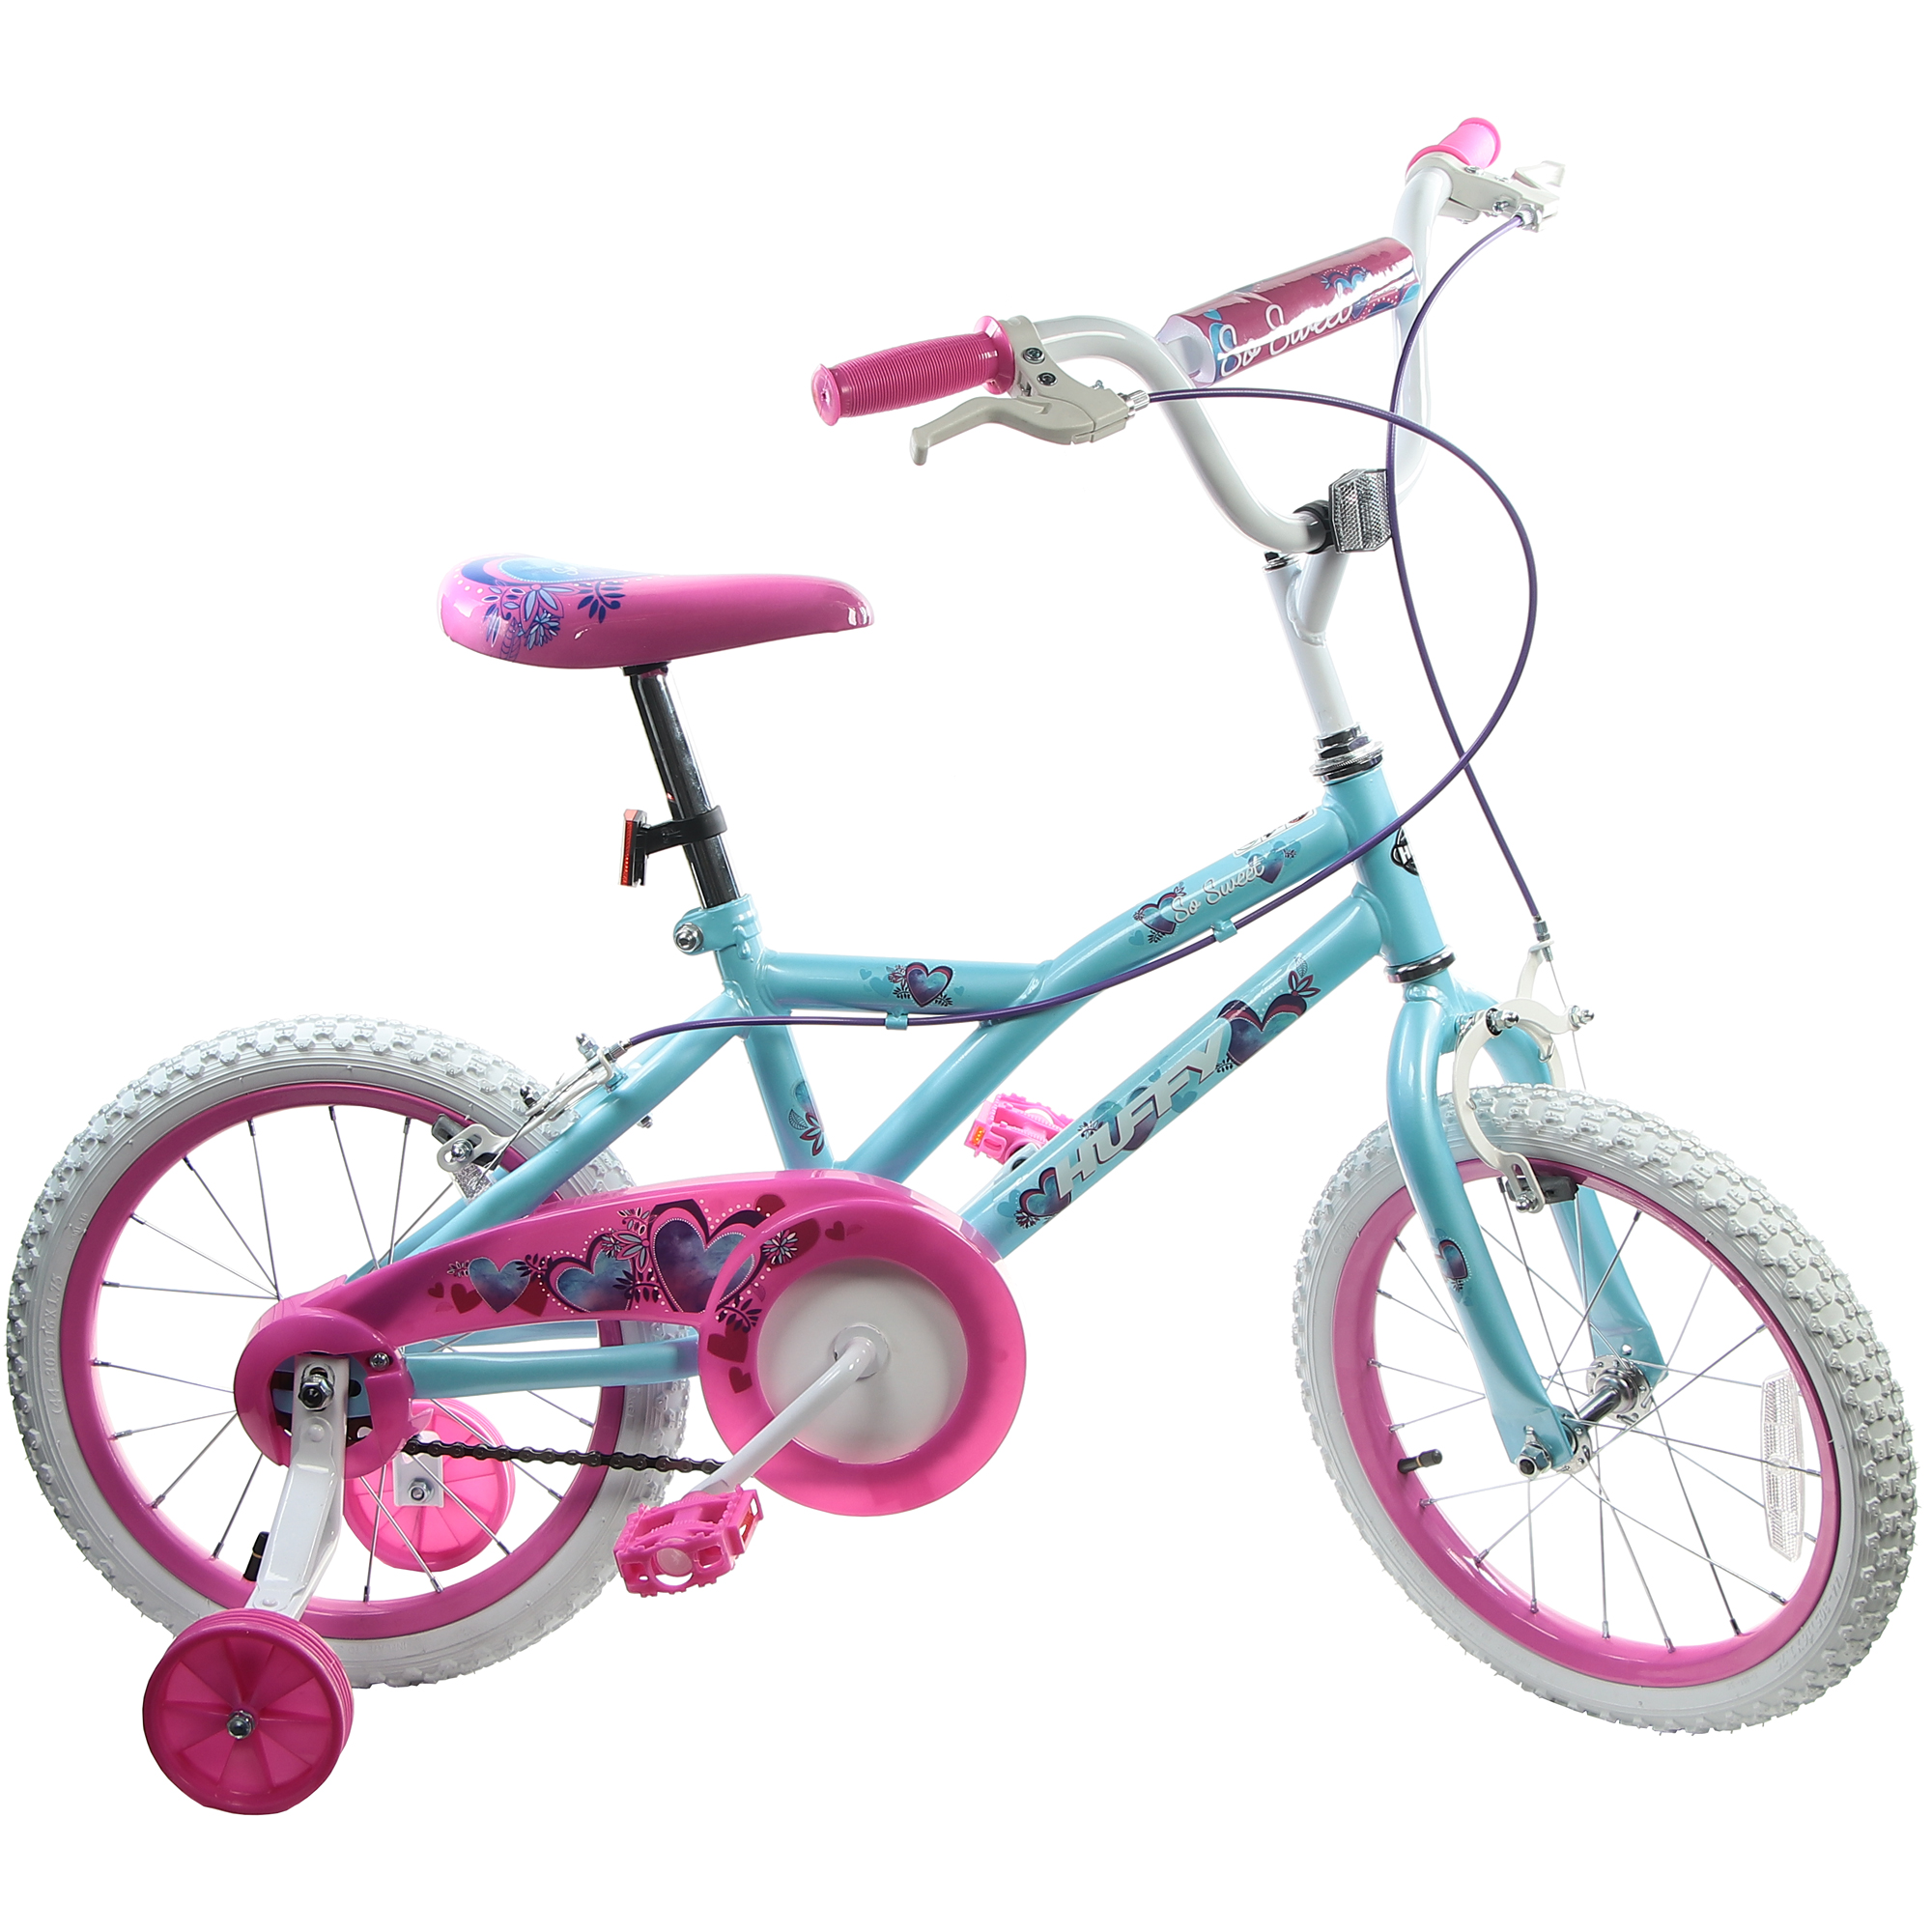 Велосипед детский Huffy So sweet, 16, для девочек велосипед детский huffy сreme soda белый 16 дюймов для девочек